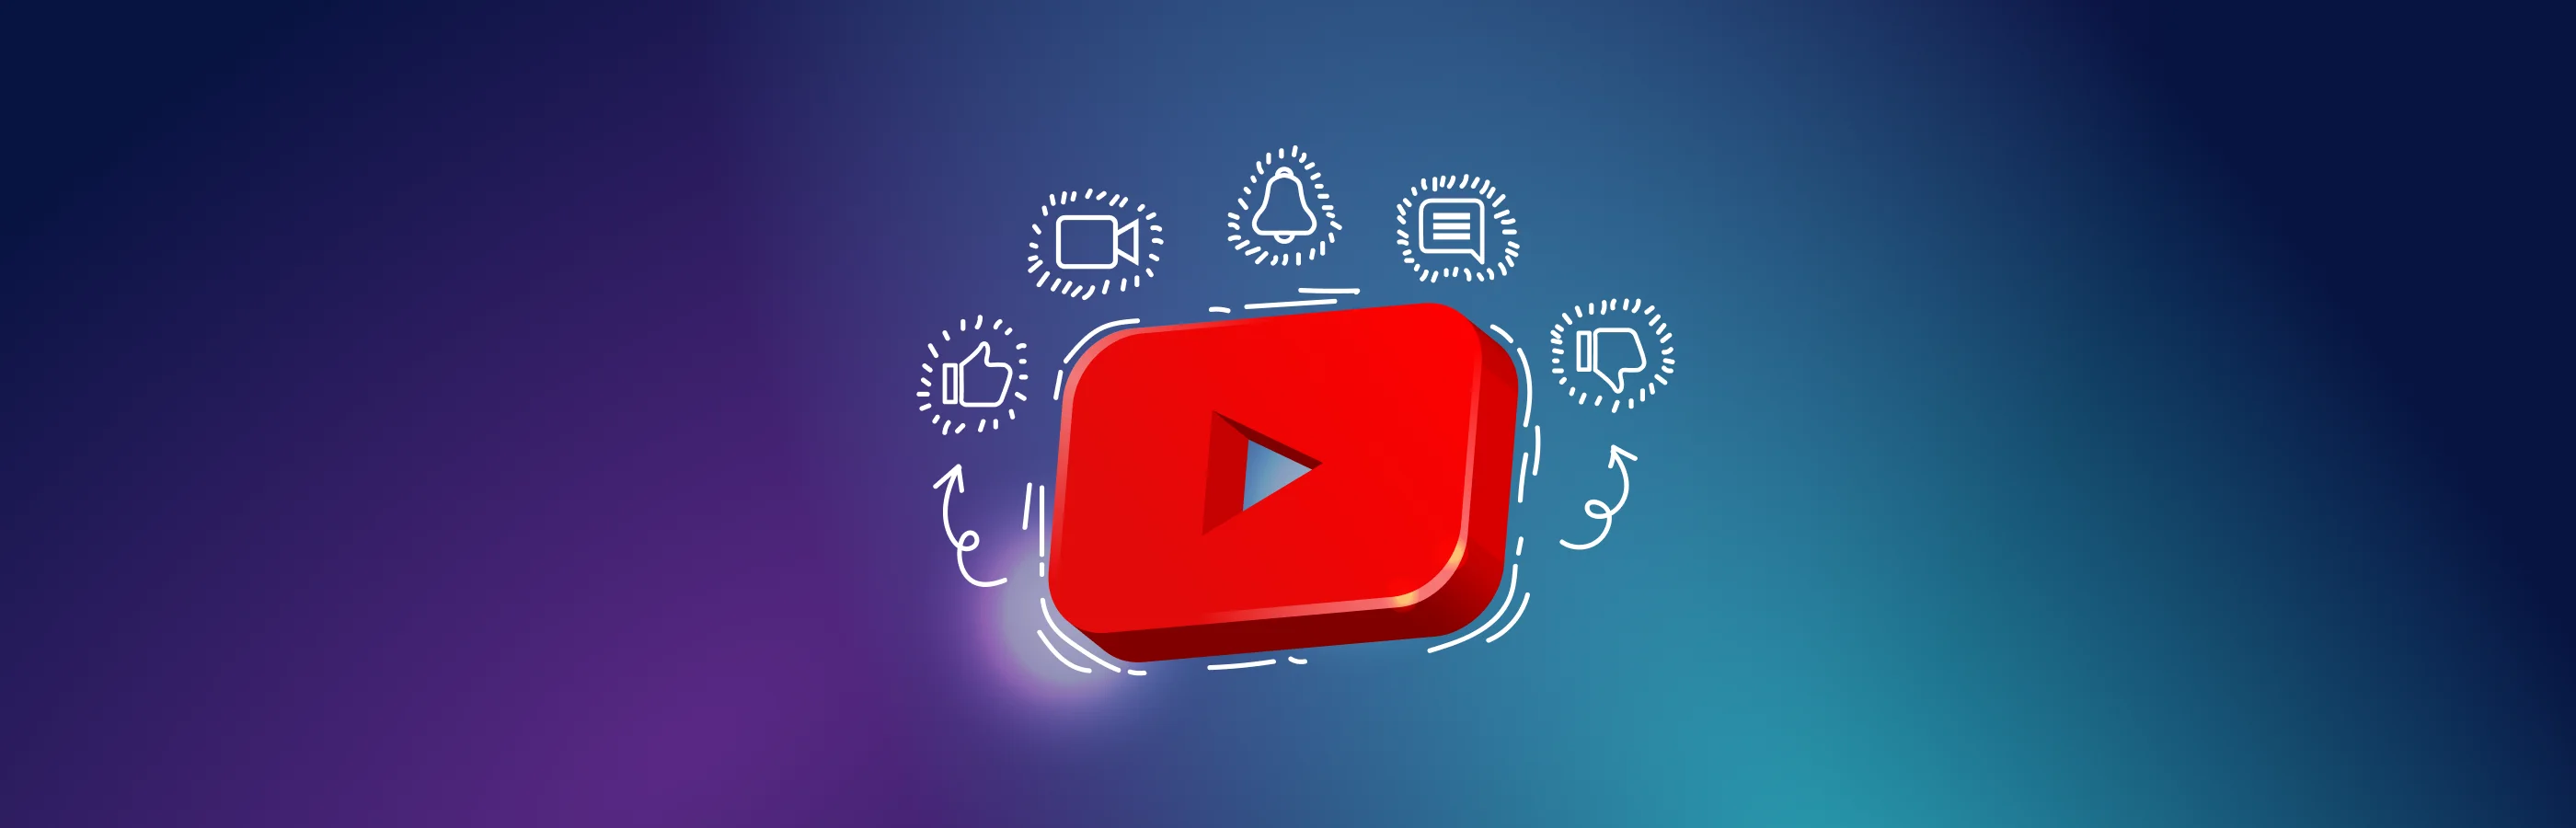 Chiến lược SEO YouTube dành cho các trang đích: lựa chọn từ khóa và phân tích đối thủ